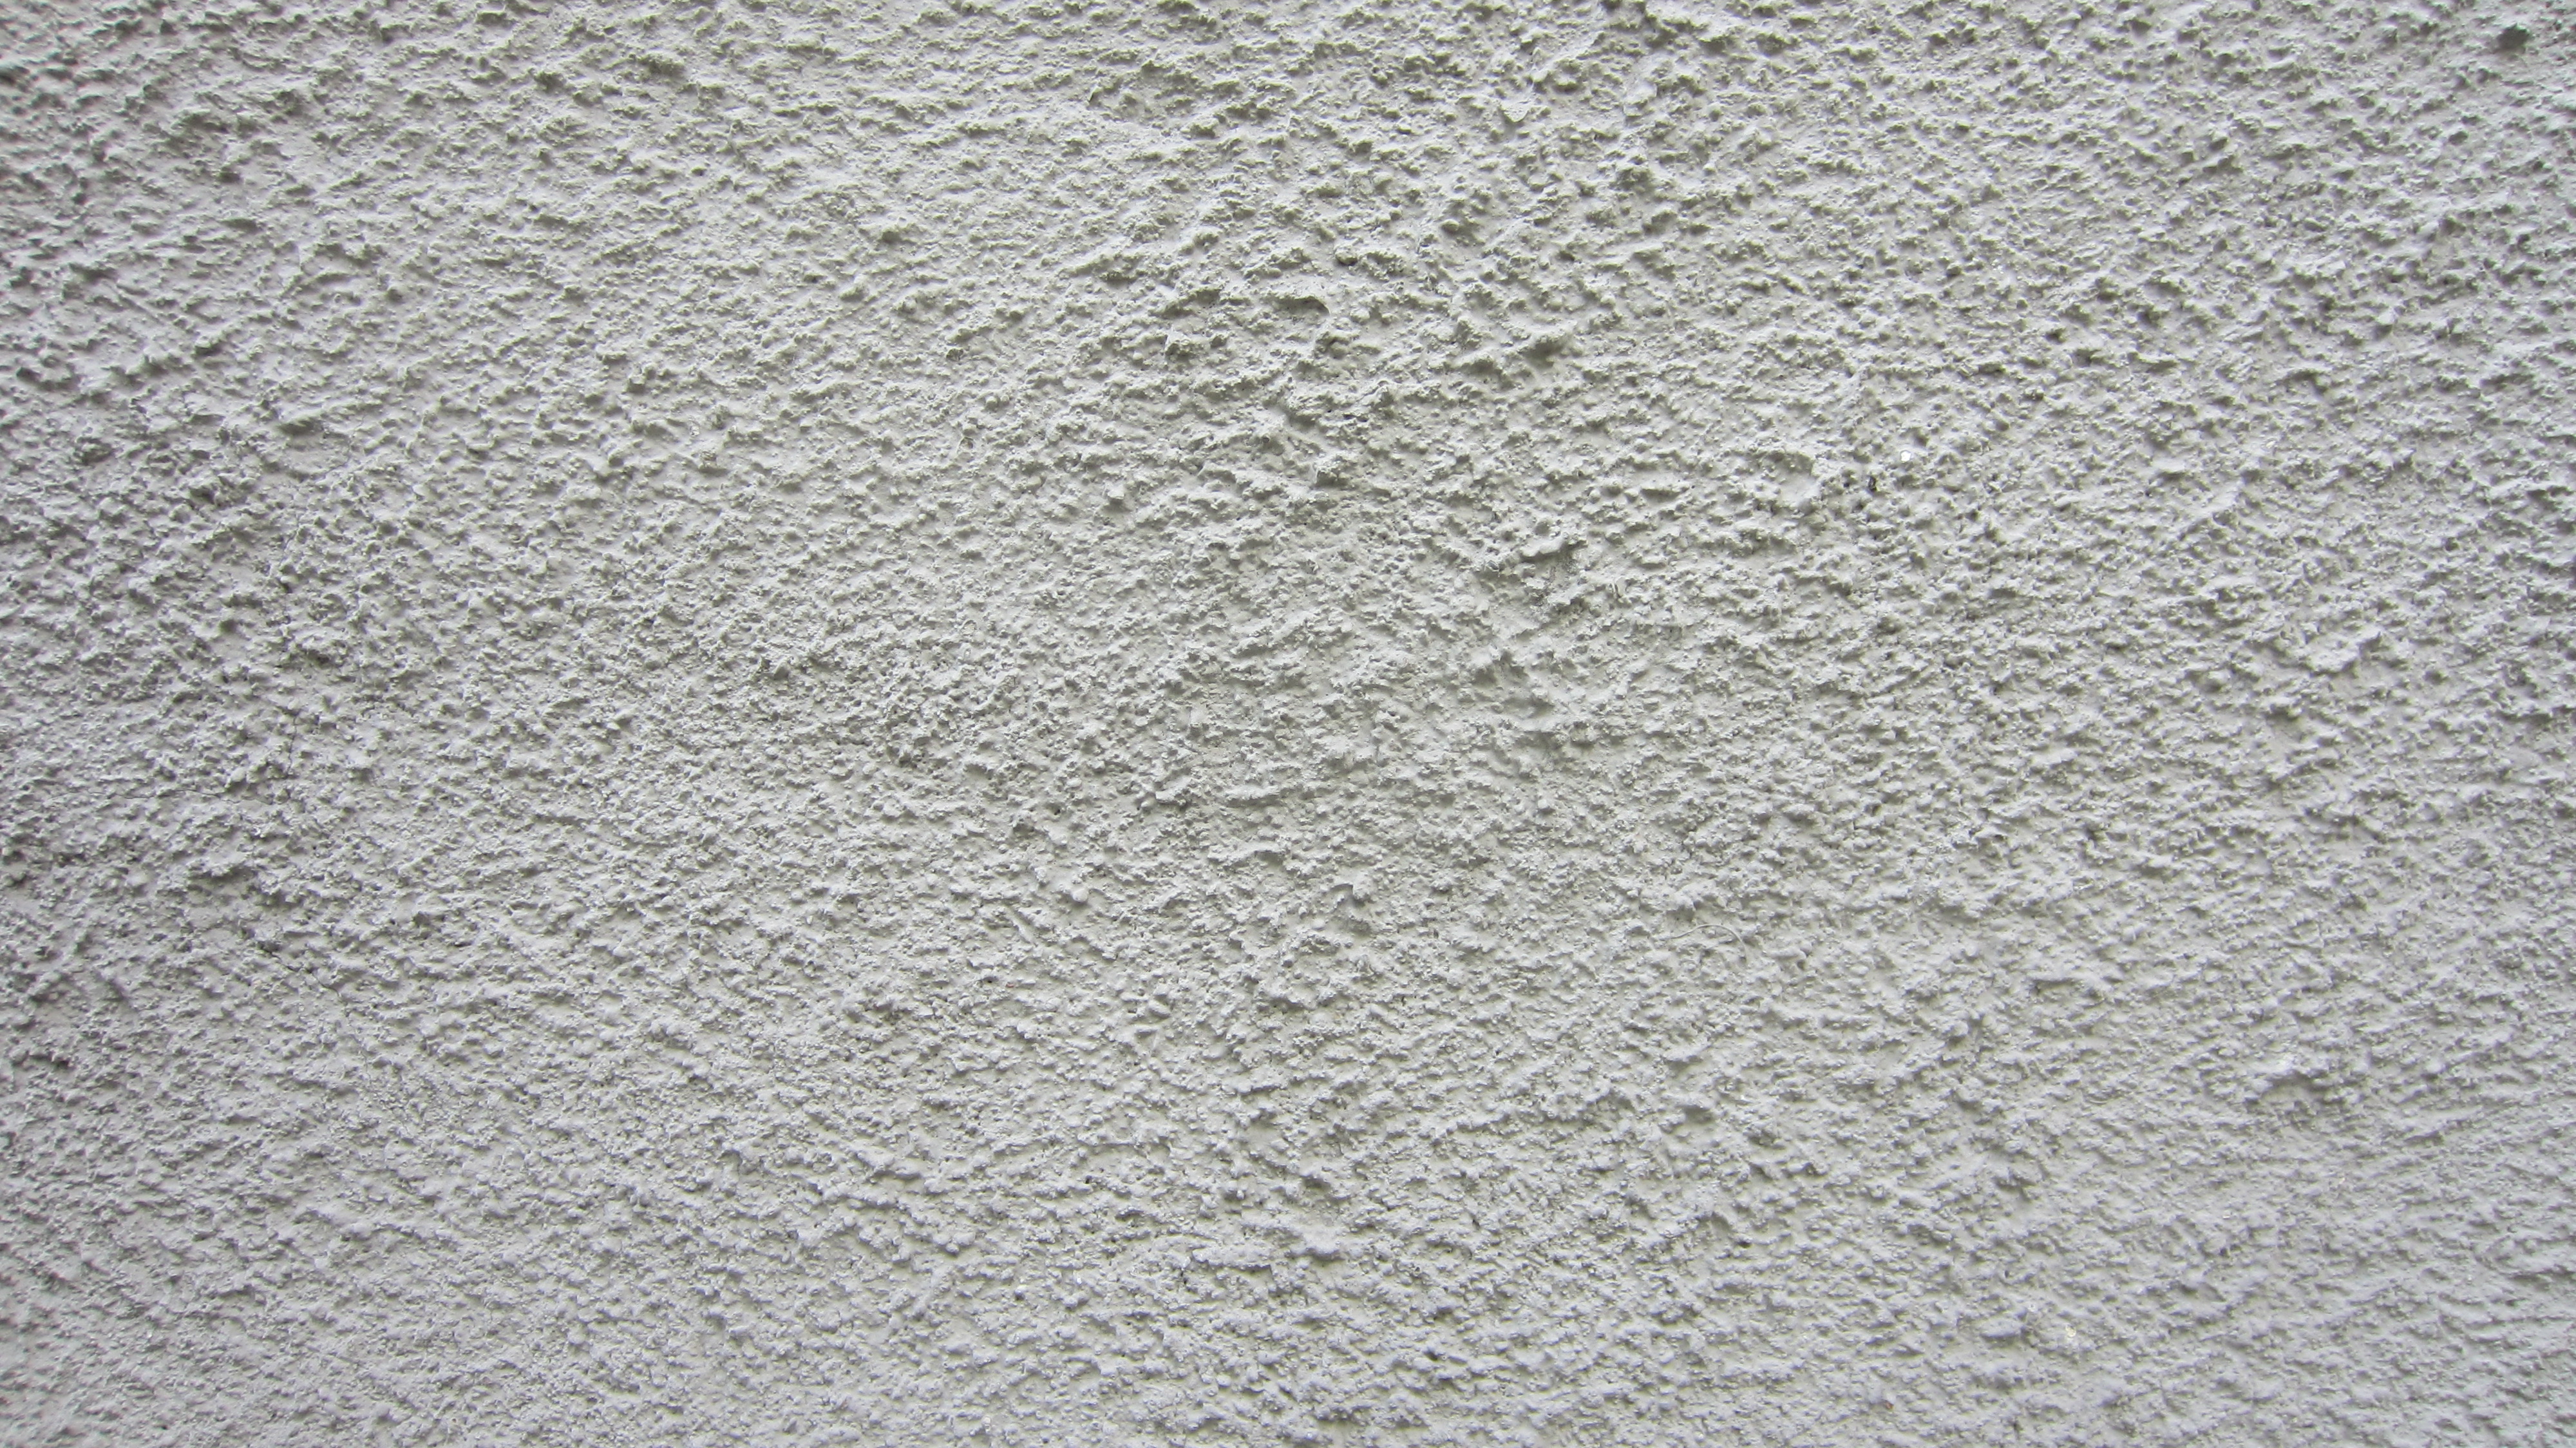 Plaster wall design 4277373 - reech.info